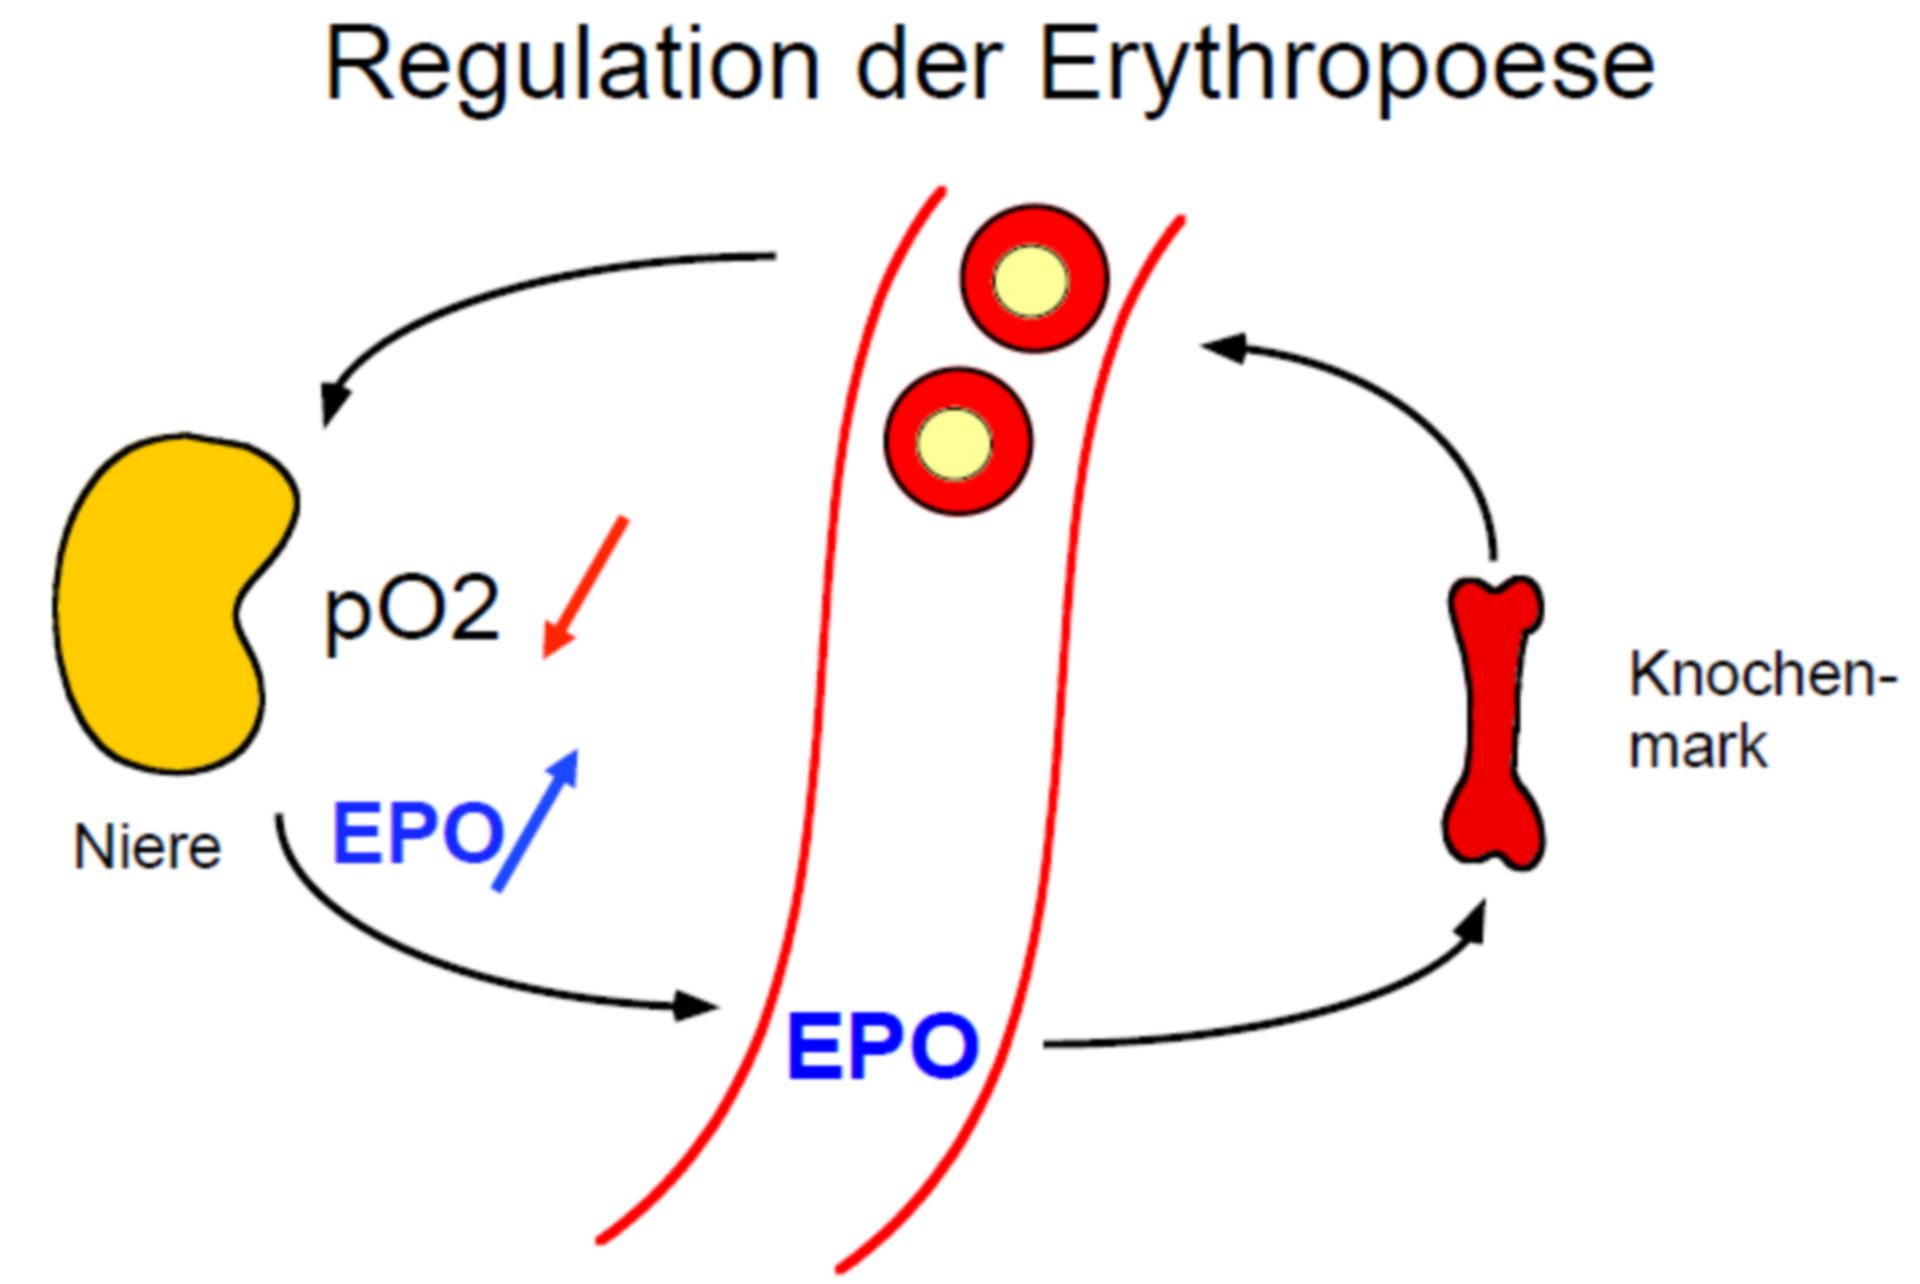 Regulation der Erythropoese